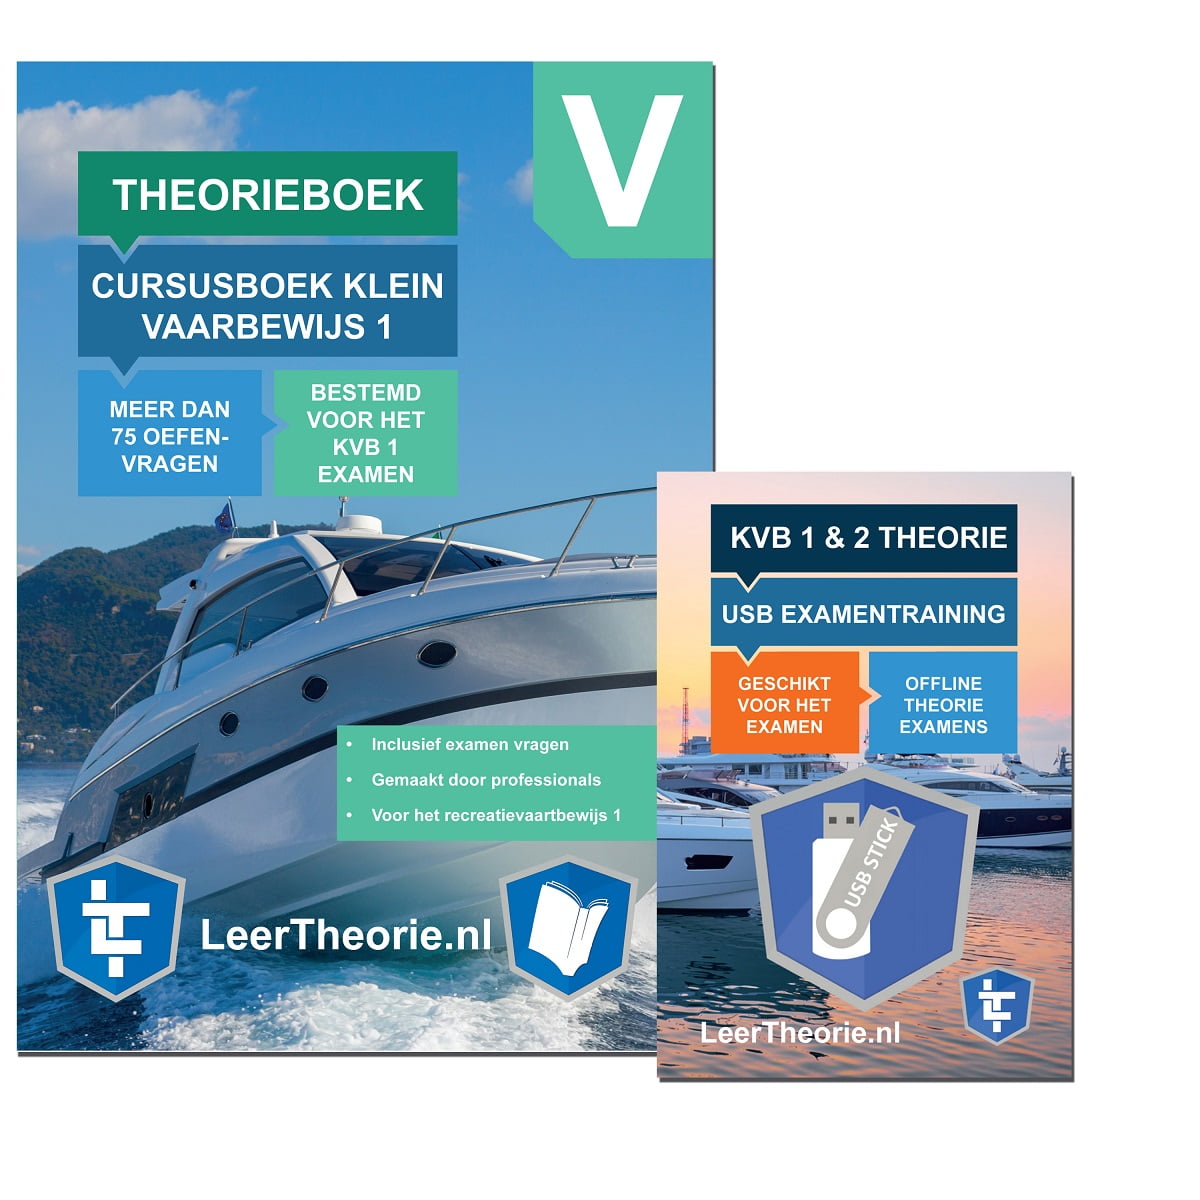 leertheorie.nl - Theorieboek Cursusboek + USB - Klein Vaarbewijs 1 - Nederland - KVB 1 - KVB1 - LeerTheorie